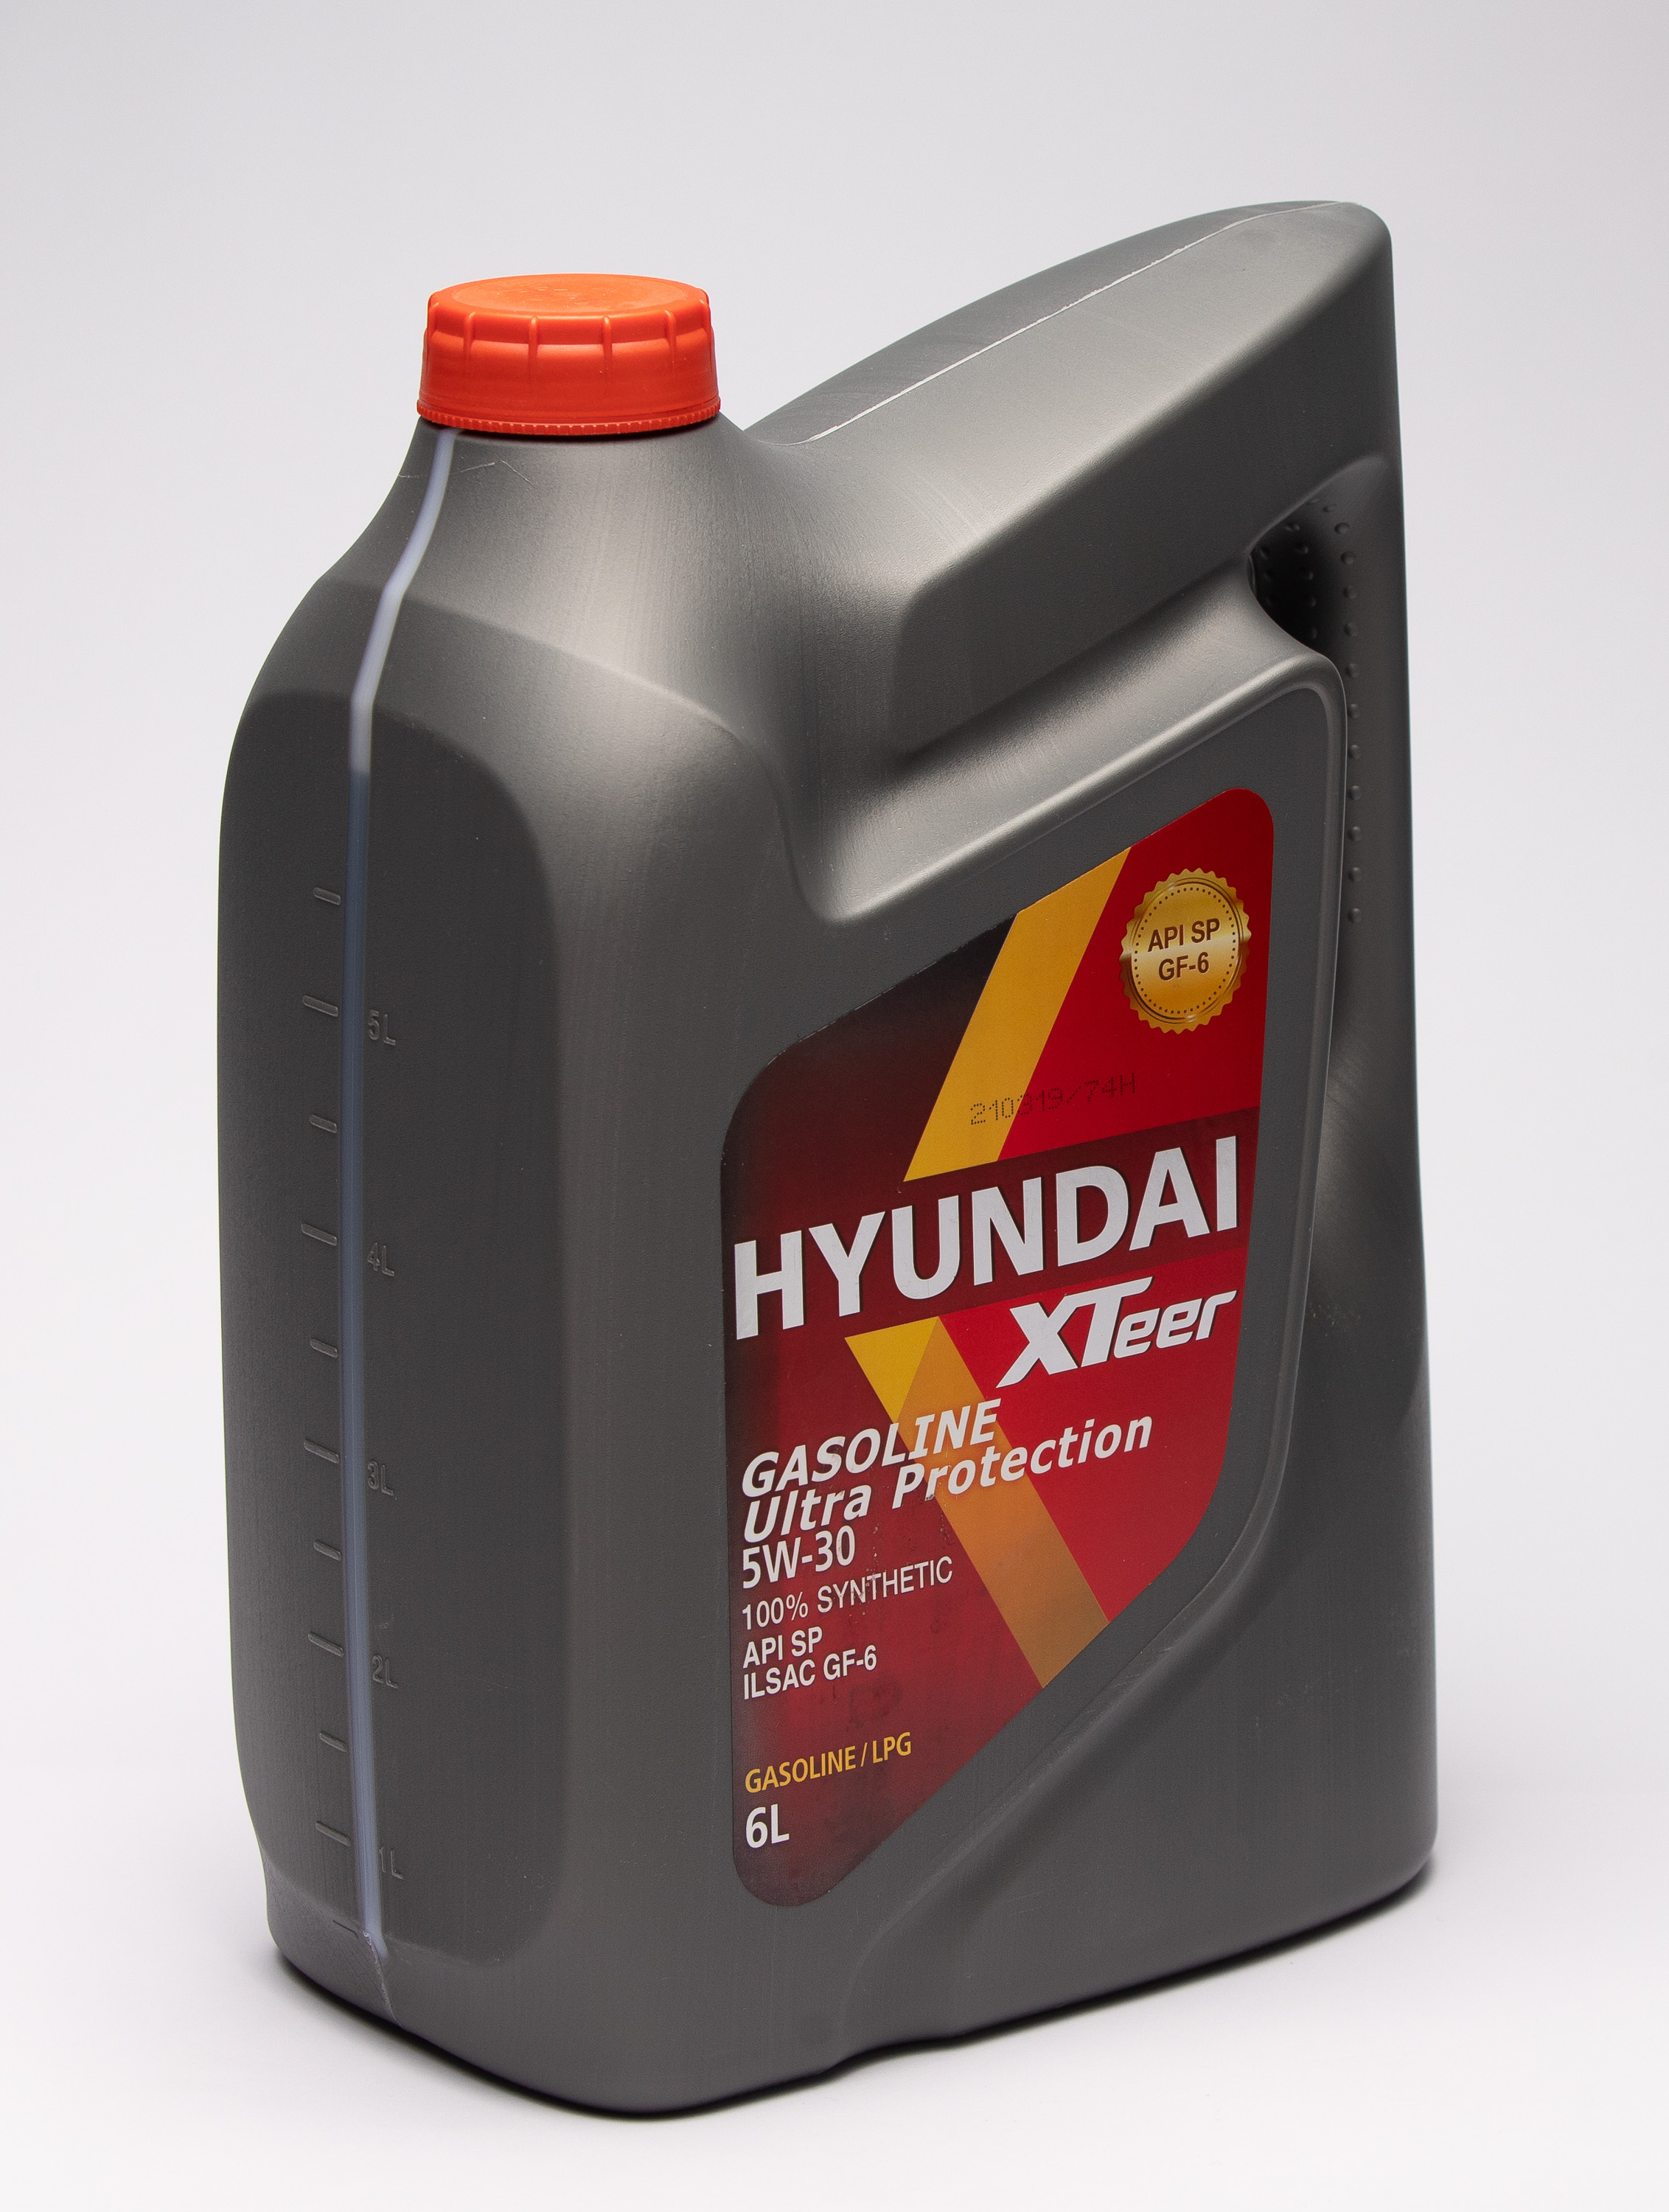 Hyundai xteer g700 5w30. Hyundai XTEER gasoline g700 5w-30. Hyundai XTEER 5w30 4л. Hyundai масло XTEER g700. XTEER g700 5w30.